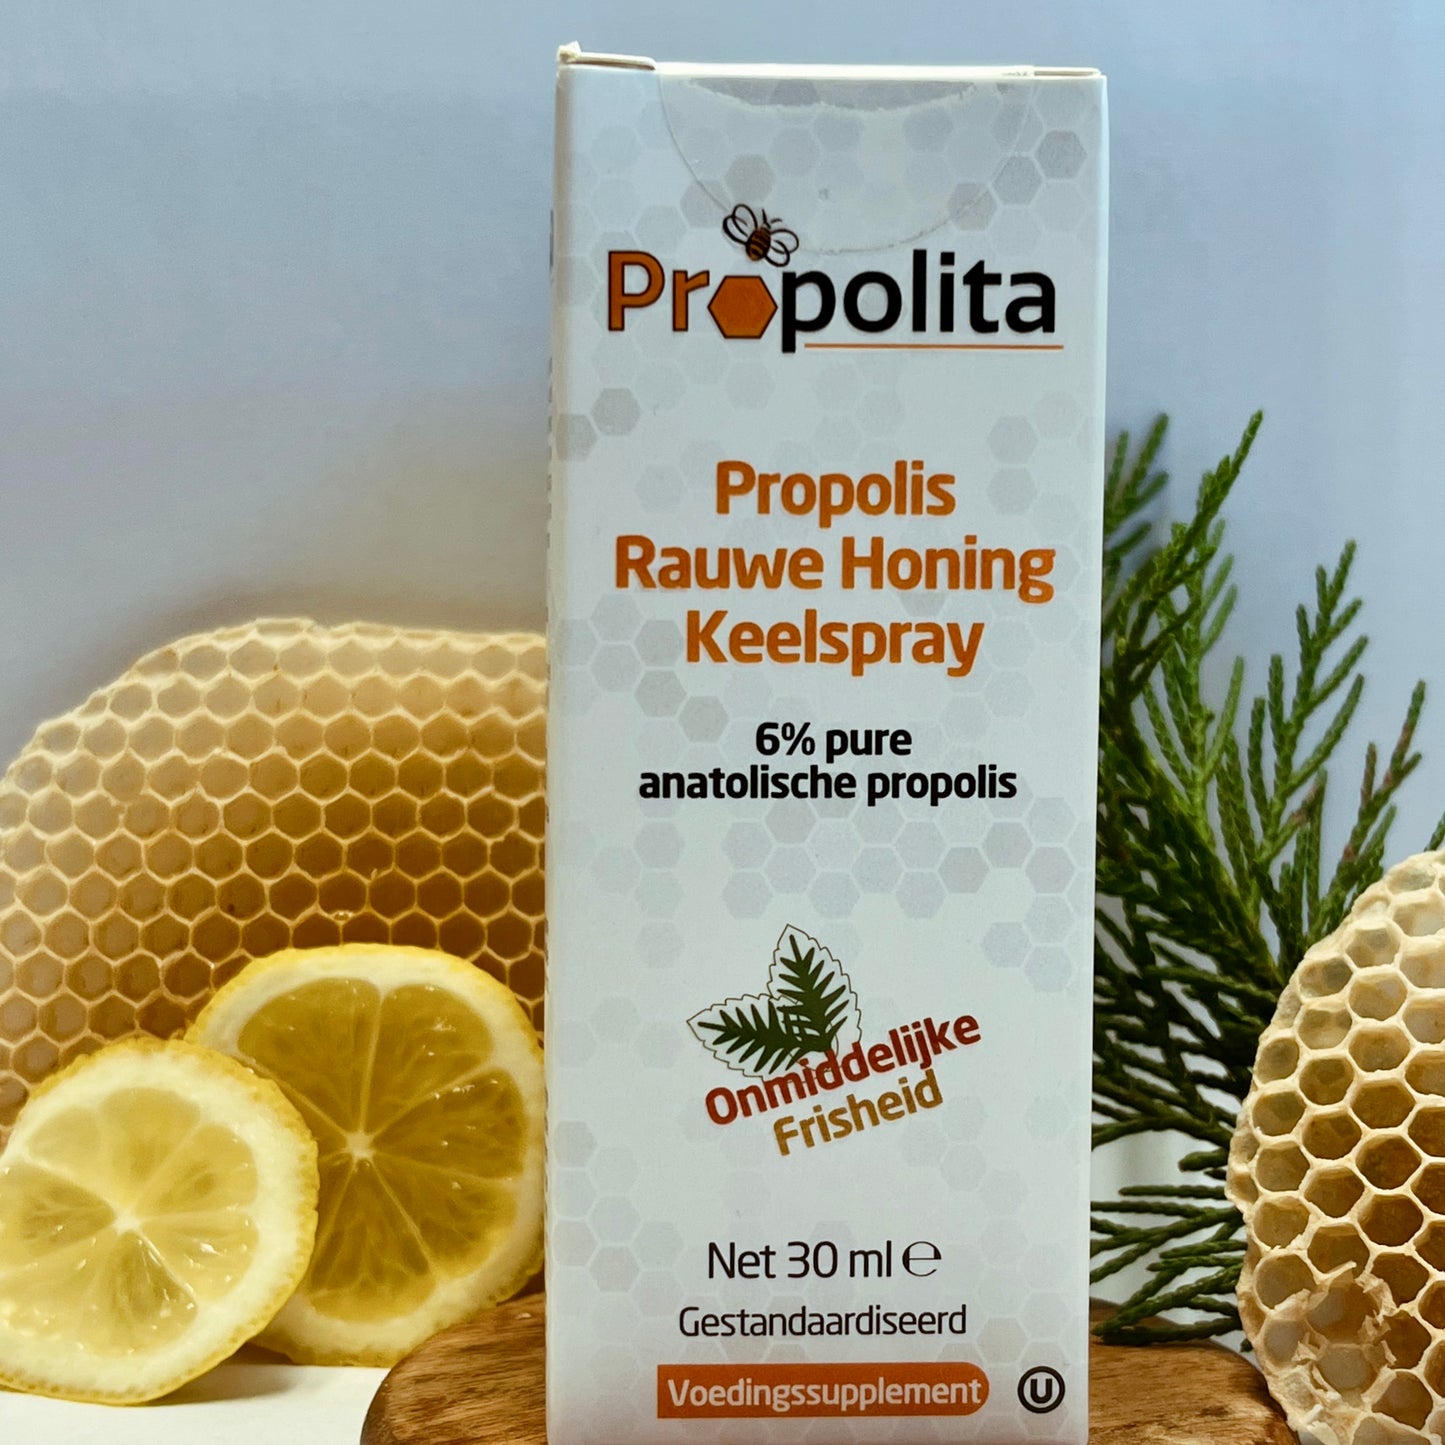 Keelspray met propolis, rauwe honing en menthol - 30 ml - propolita